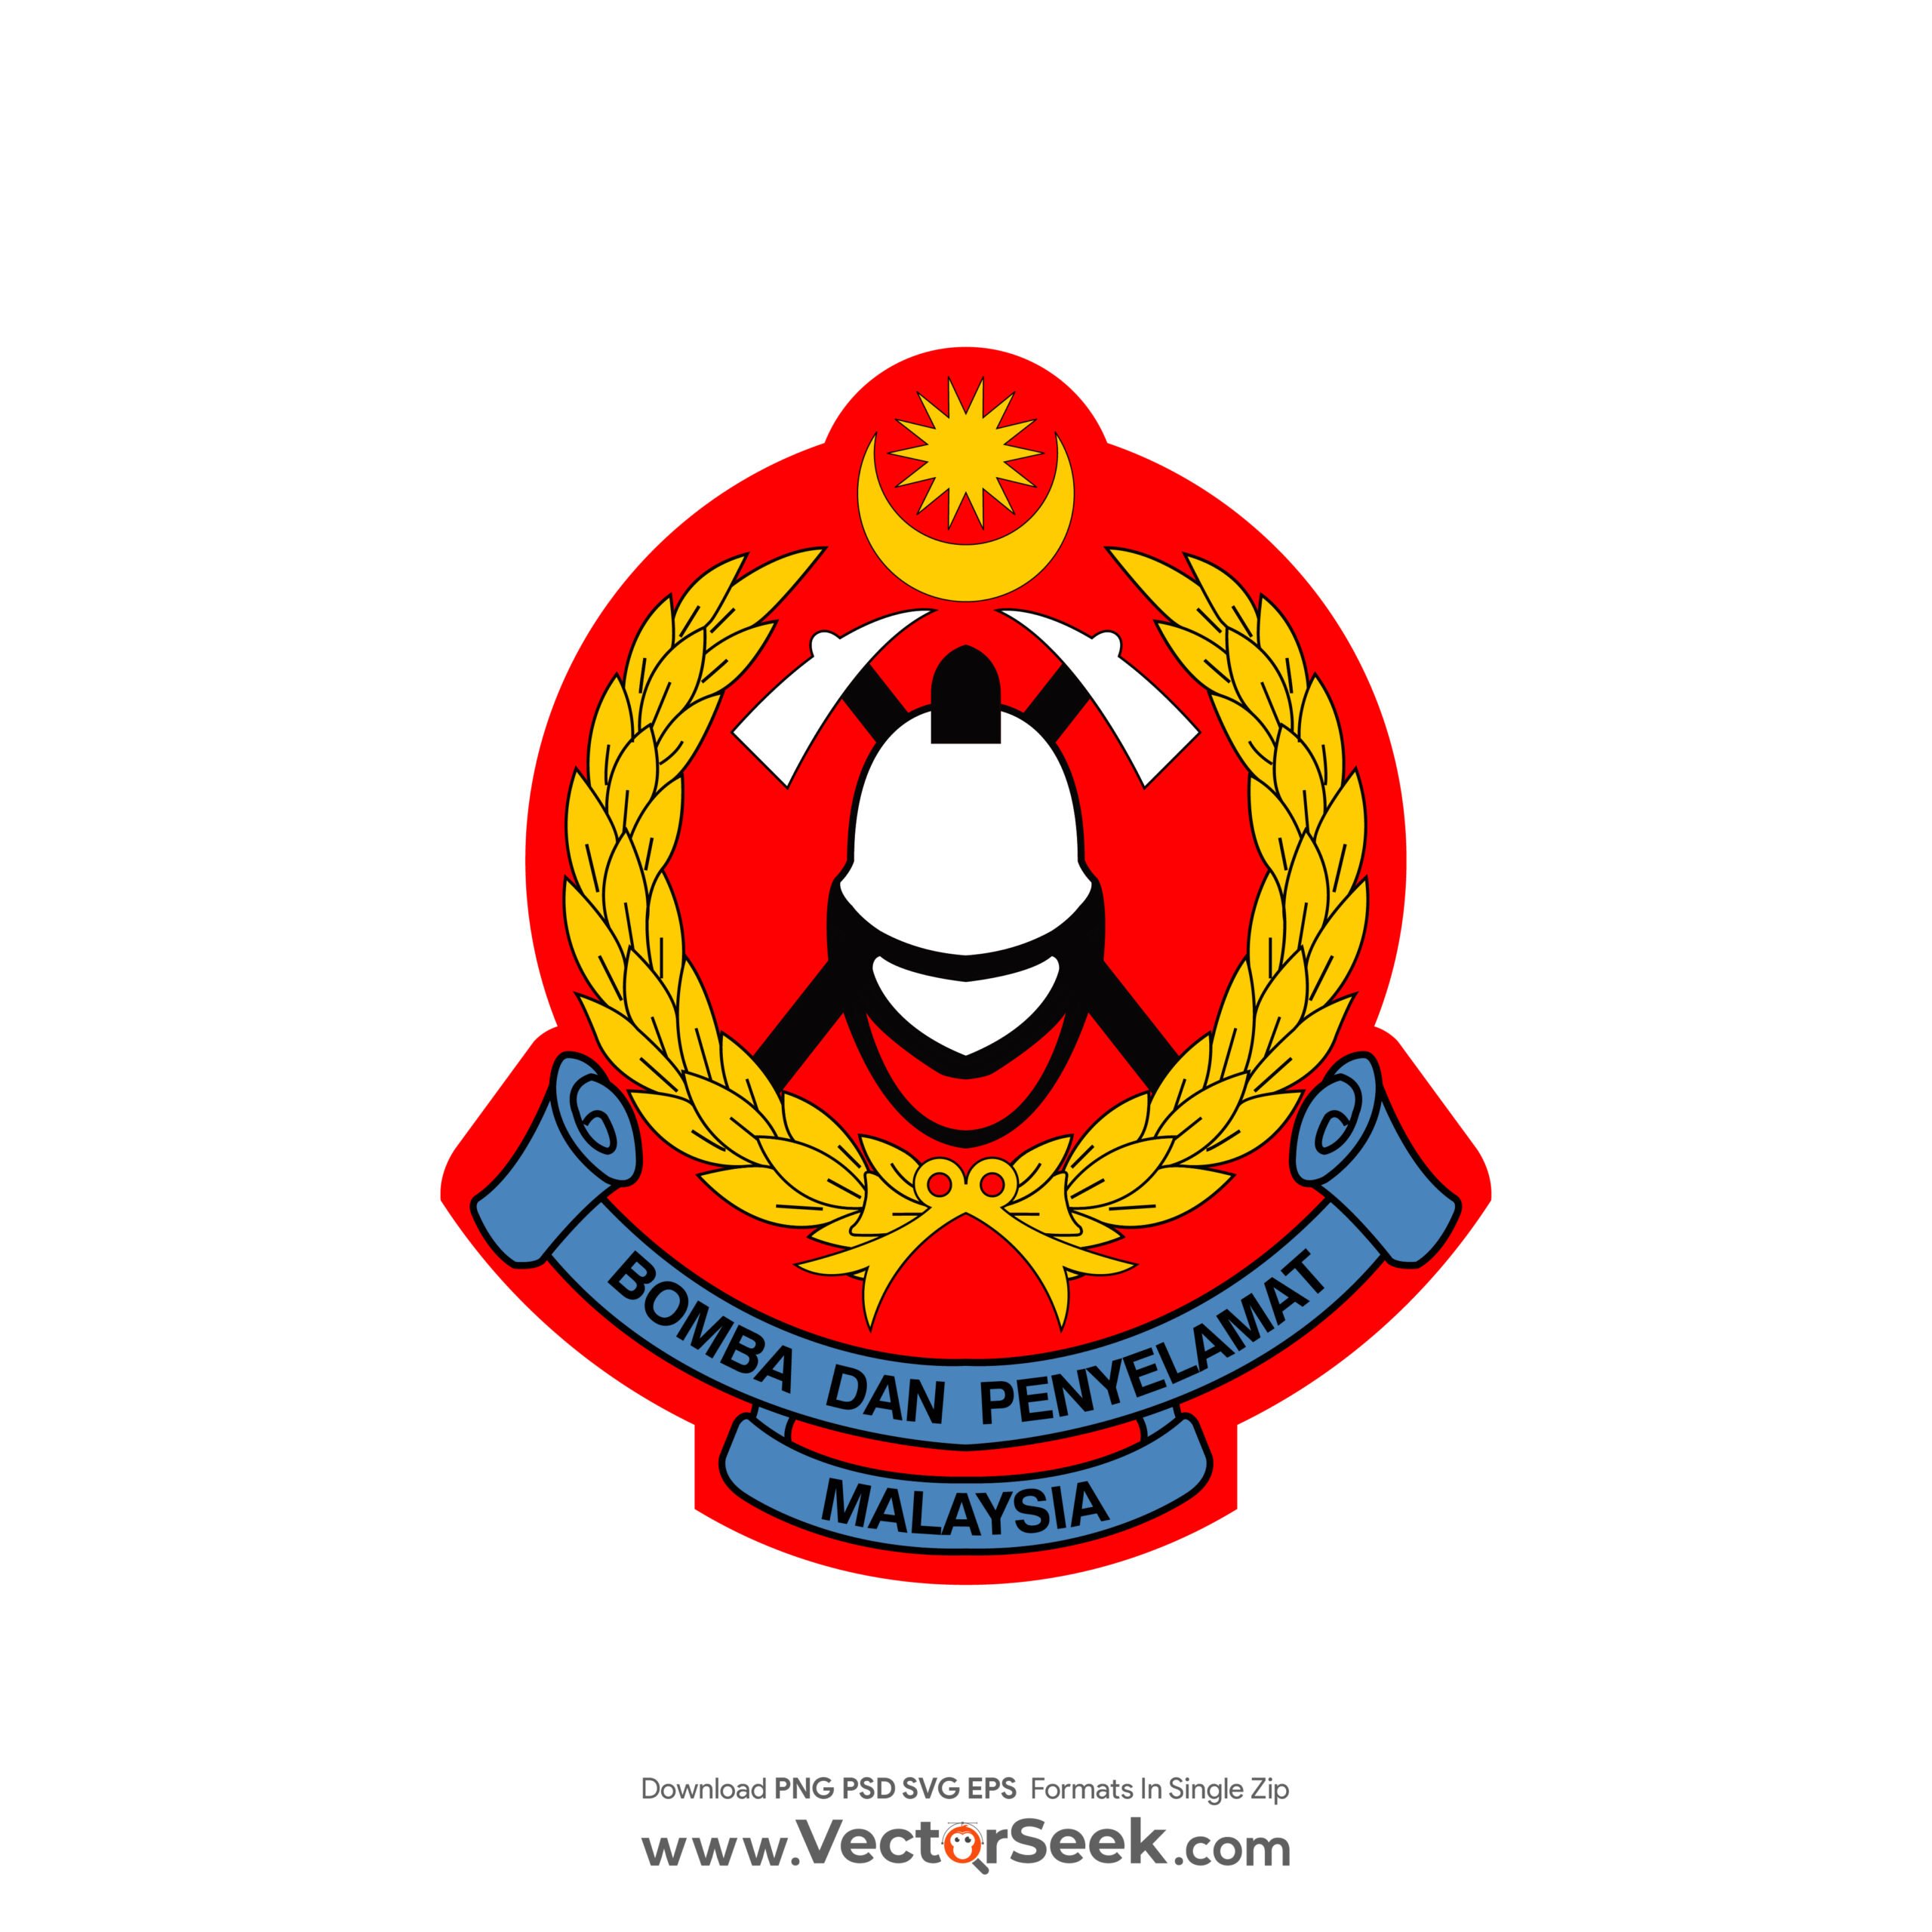 Jabatan Bomba dan Penyelamat Malaysia Logo Vector